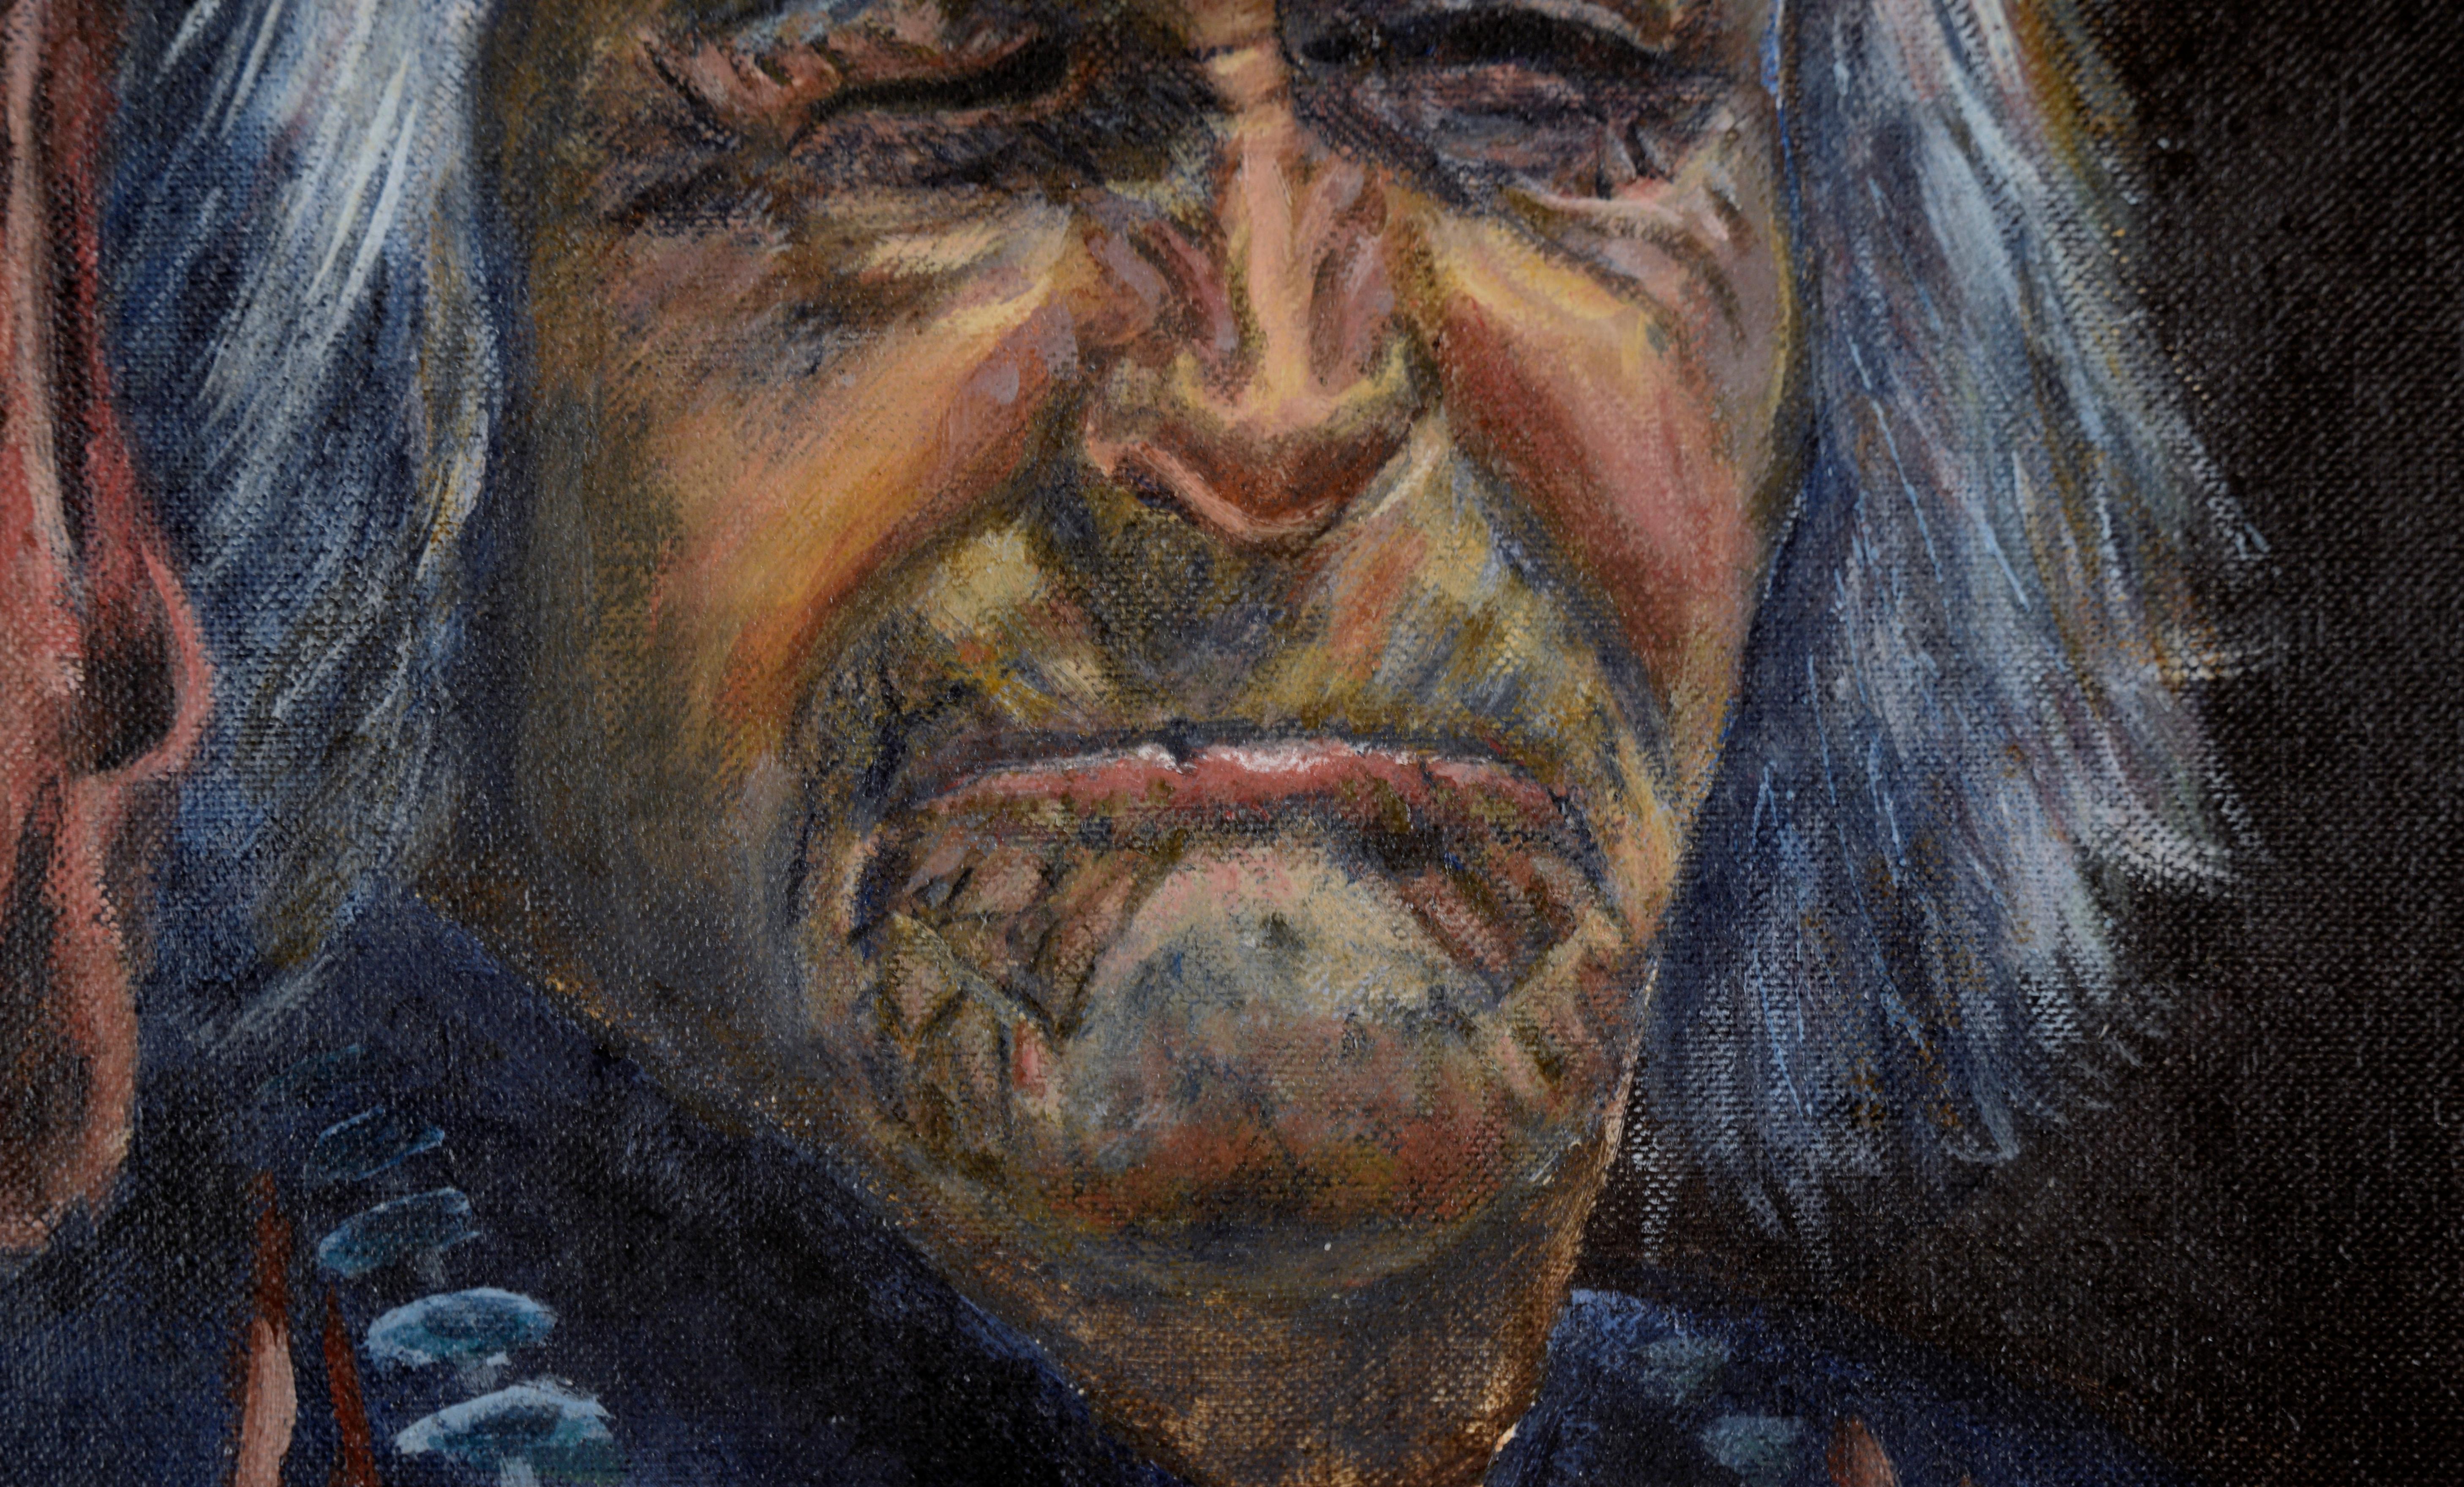 Porträt eines indianischen Ältesten in Öl auf Künstlerpappe
Stattliches Porträt eines älteren Mannes von Hoyt Yeatman II (Jr) (Amerikaner, 1926-2019). Der Mann ist vor einem dunklen Hintergrund abgebildet und trägt eine blaue Tunika, ein rotes